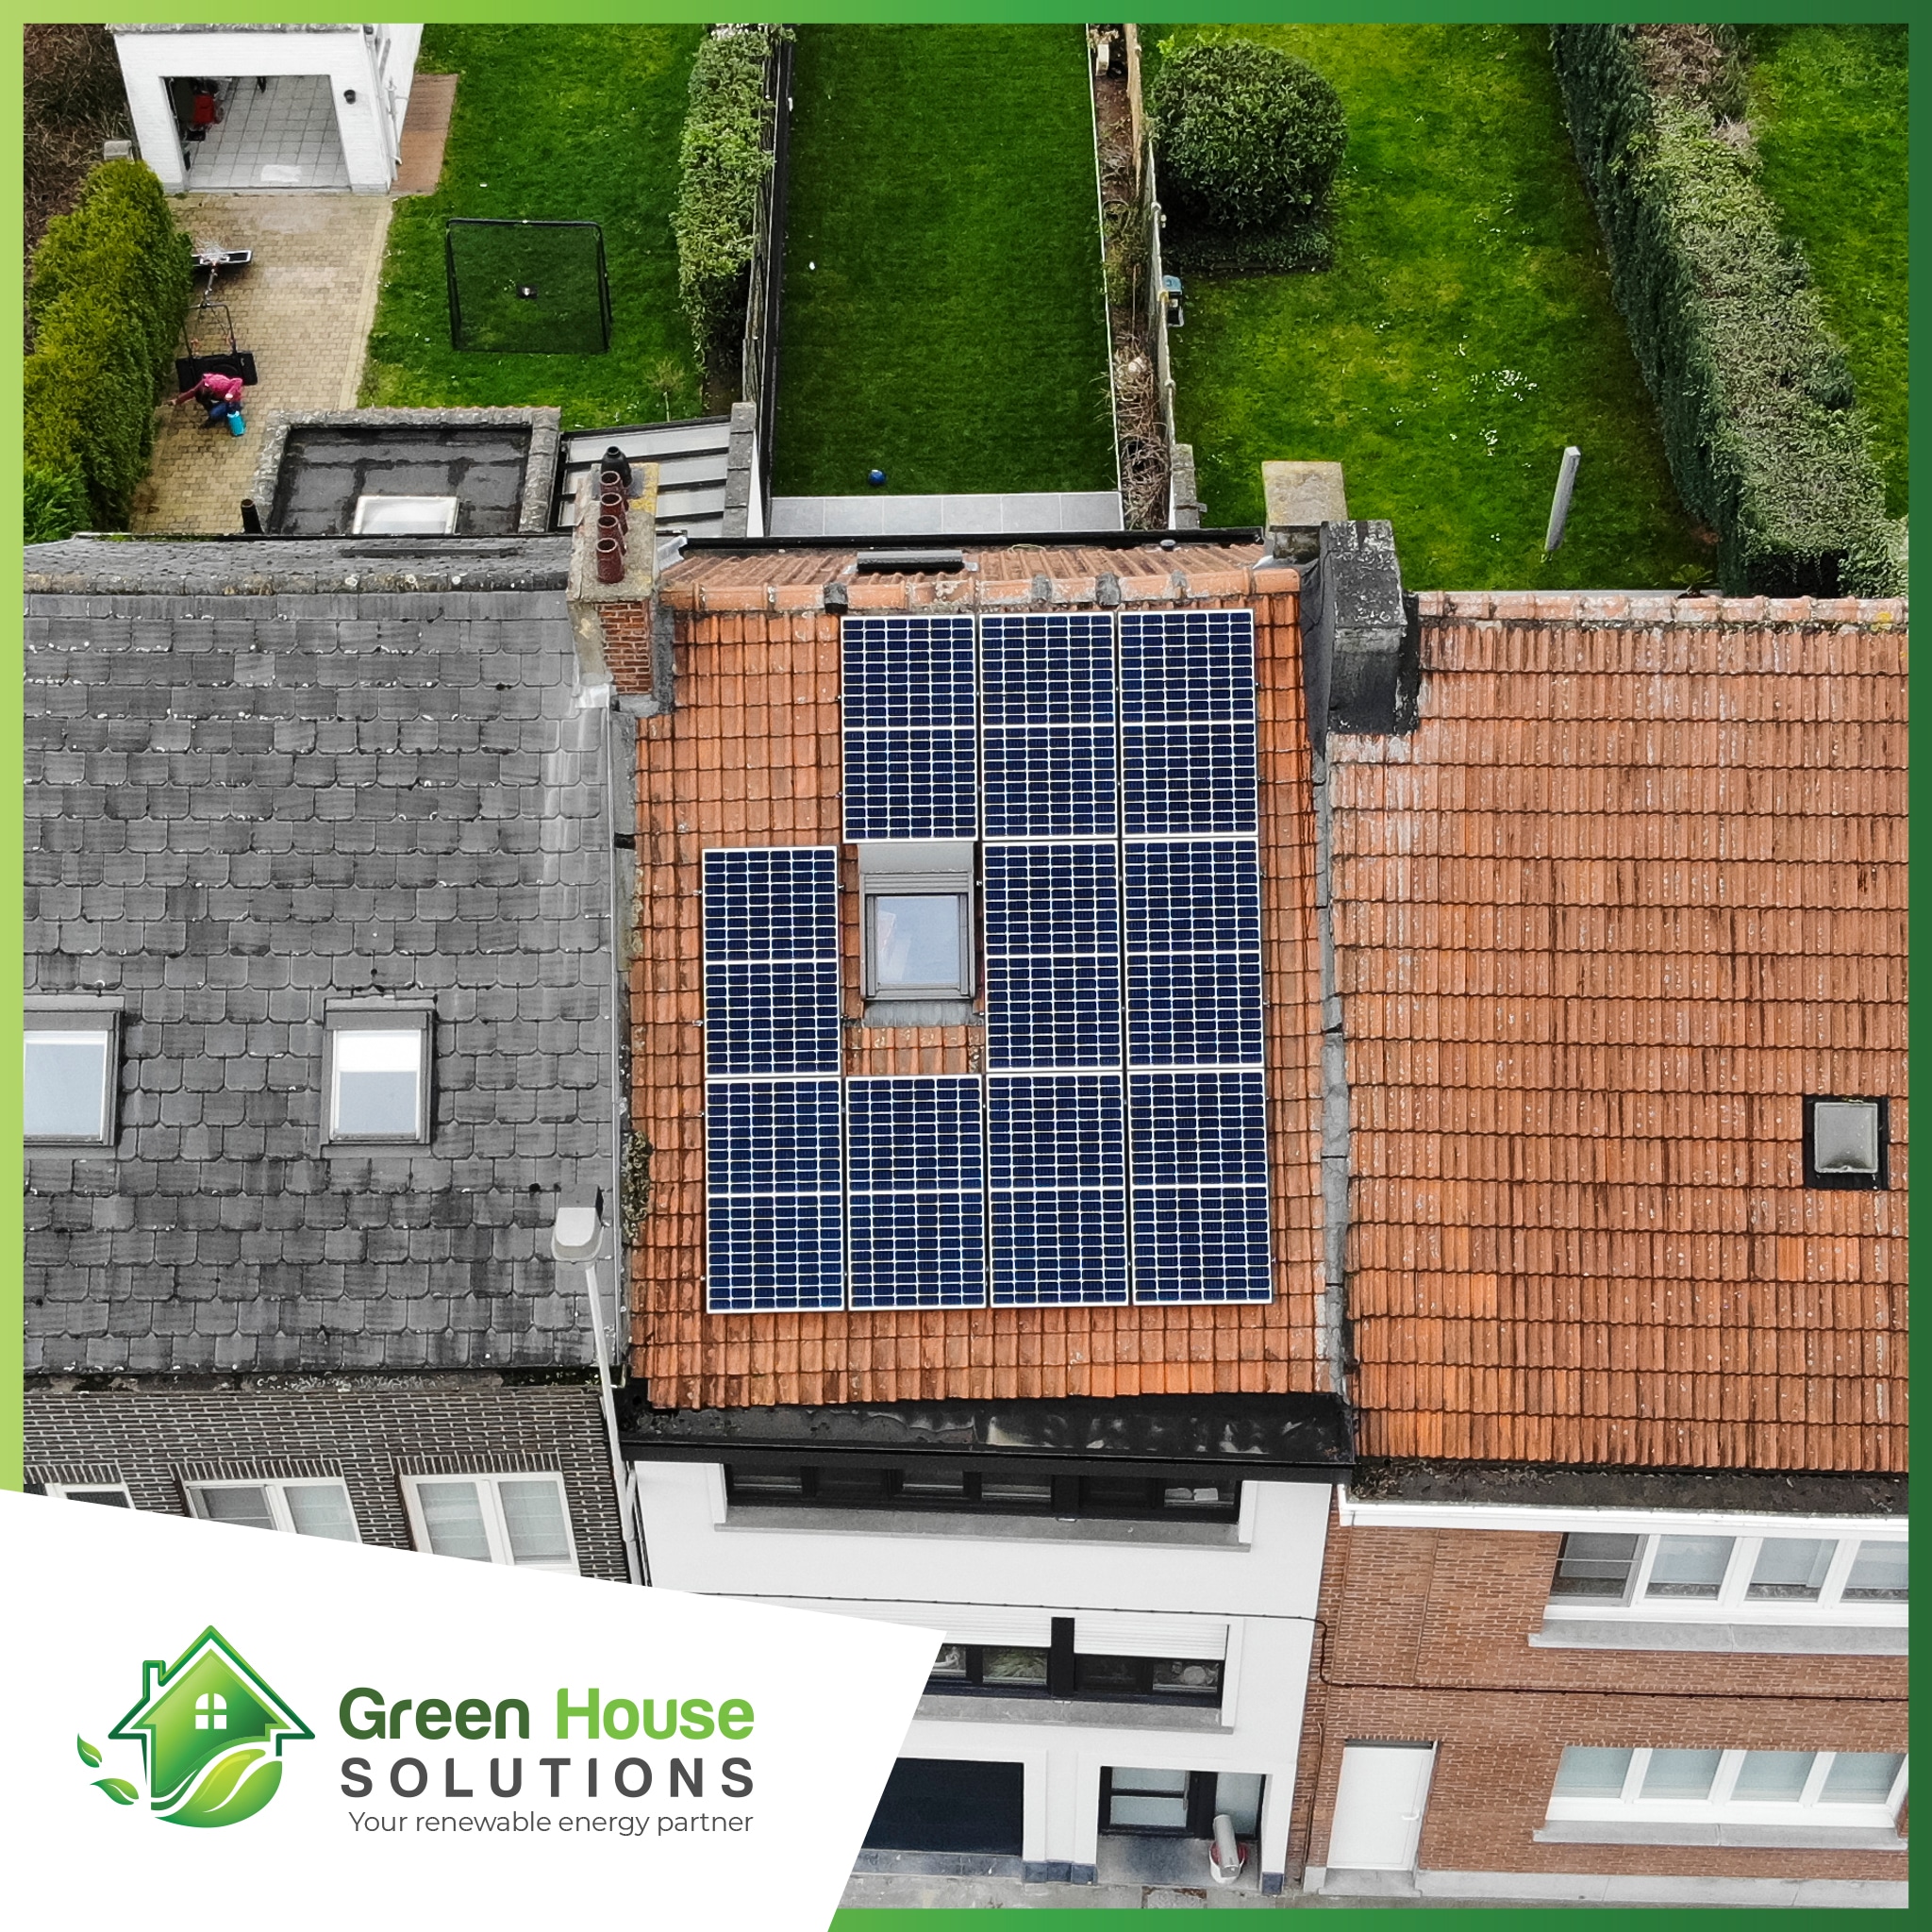 Green House Solutions zonnepanelen plaatsen installeren of kopen 00046